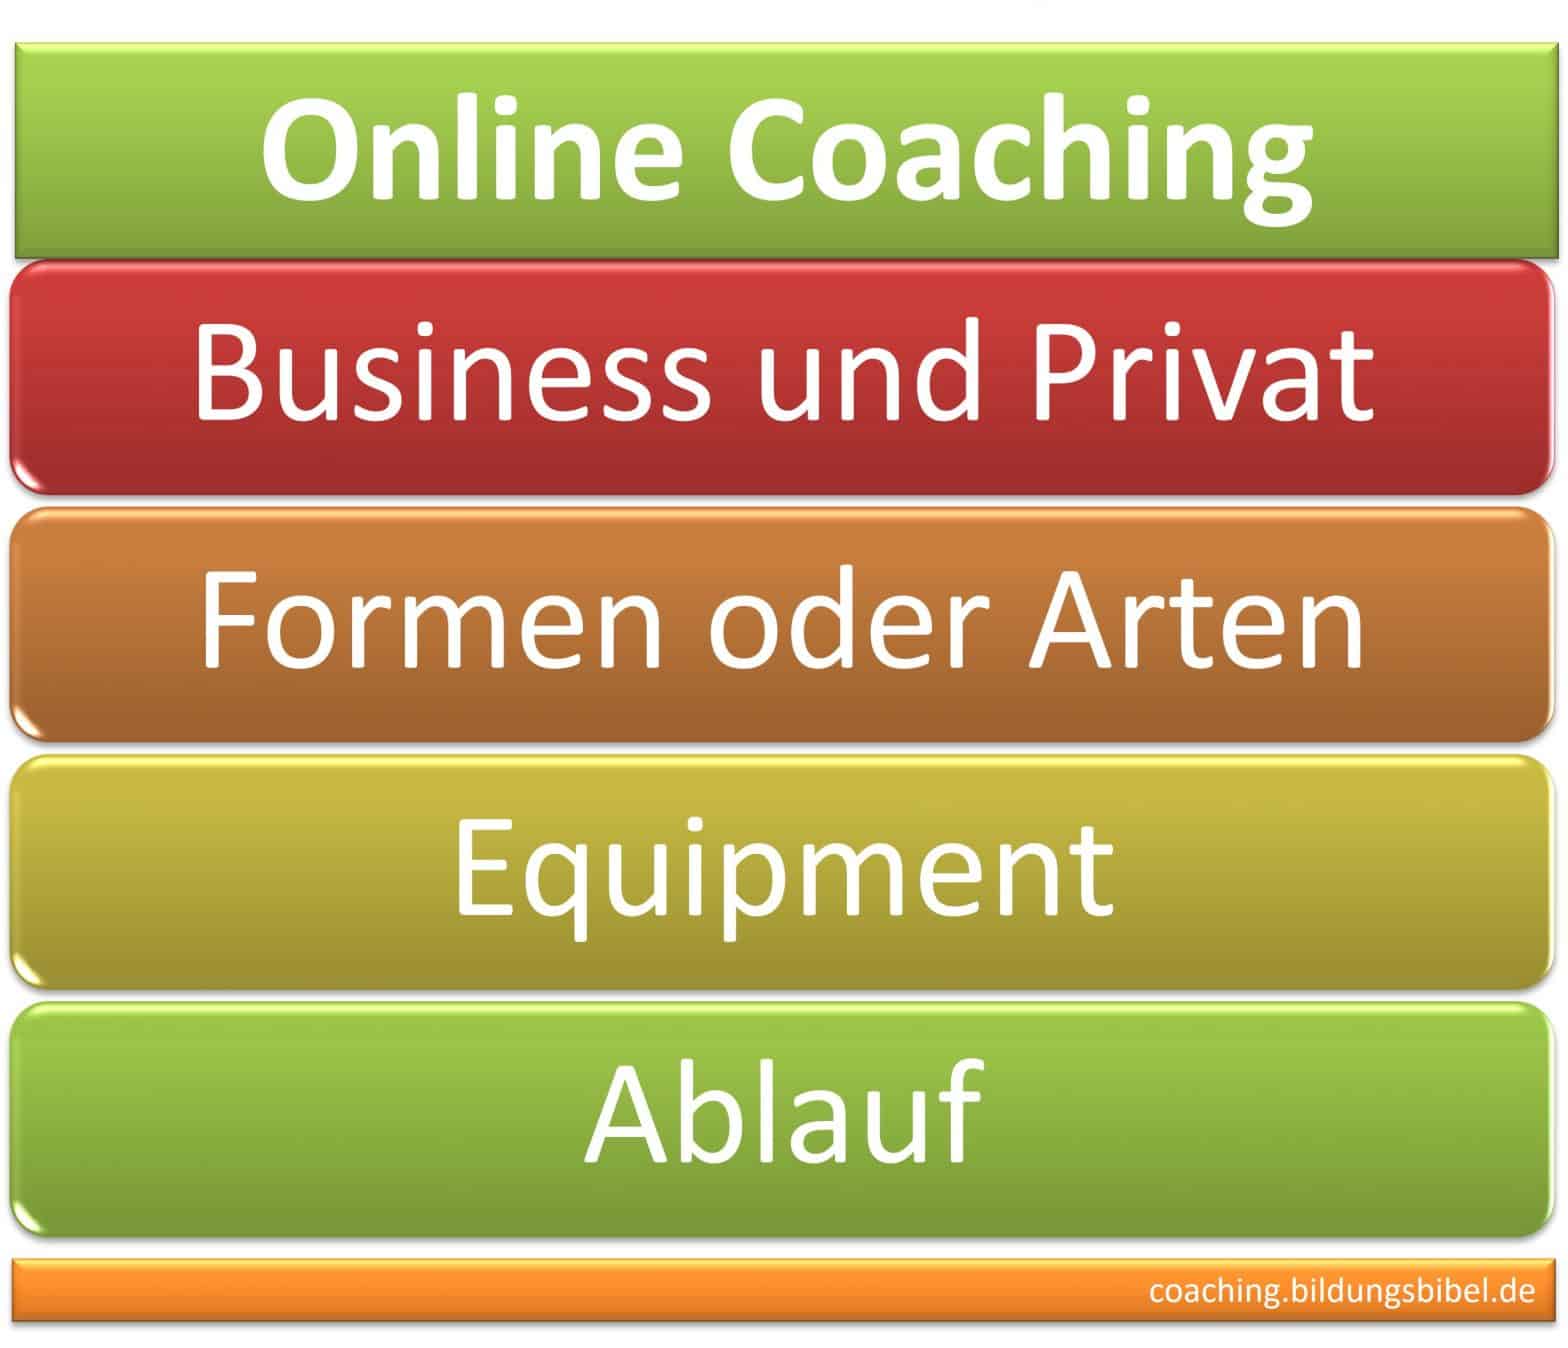 Online Coaching oder Coaching über Internet, Formen, Arten, Equipment (Mikro, Headset, Laptop), Privat und Business sowie Info zum Ablauf.